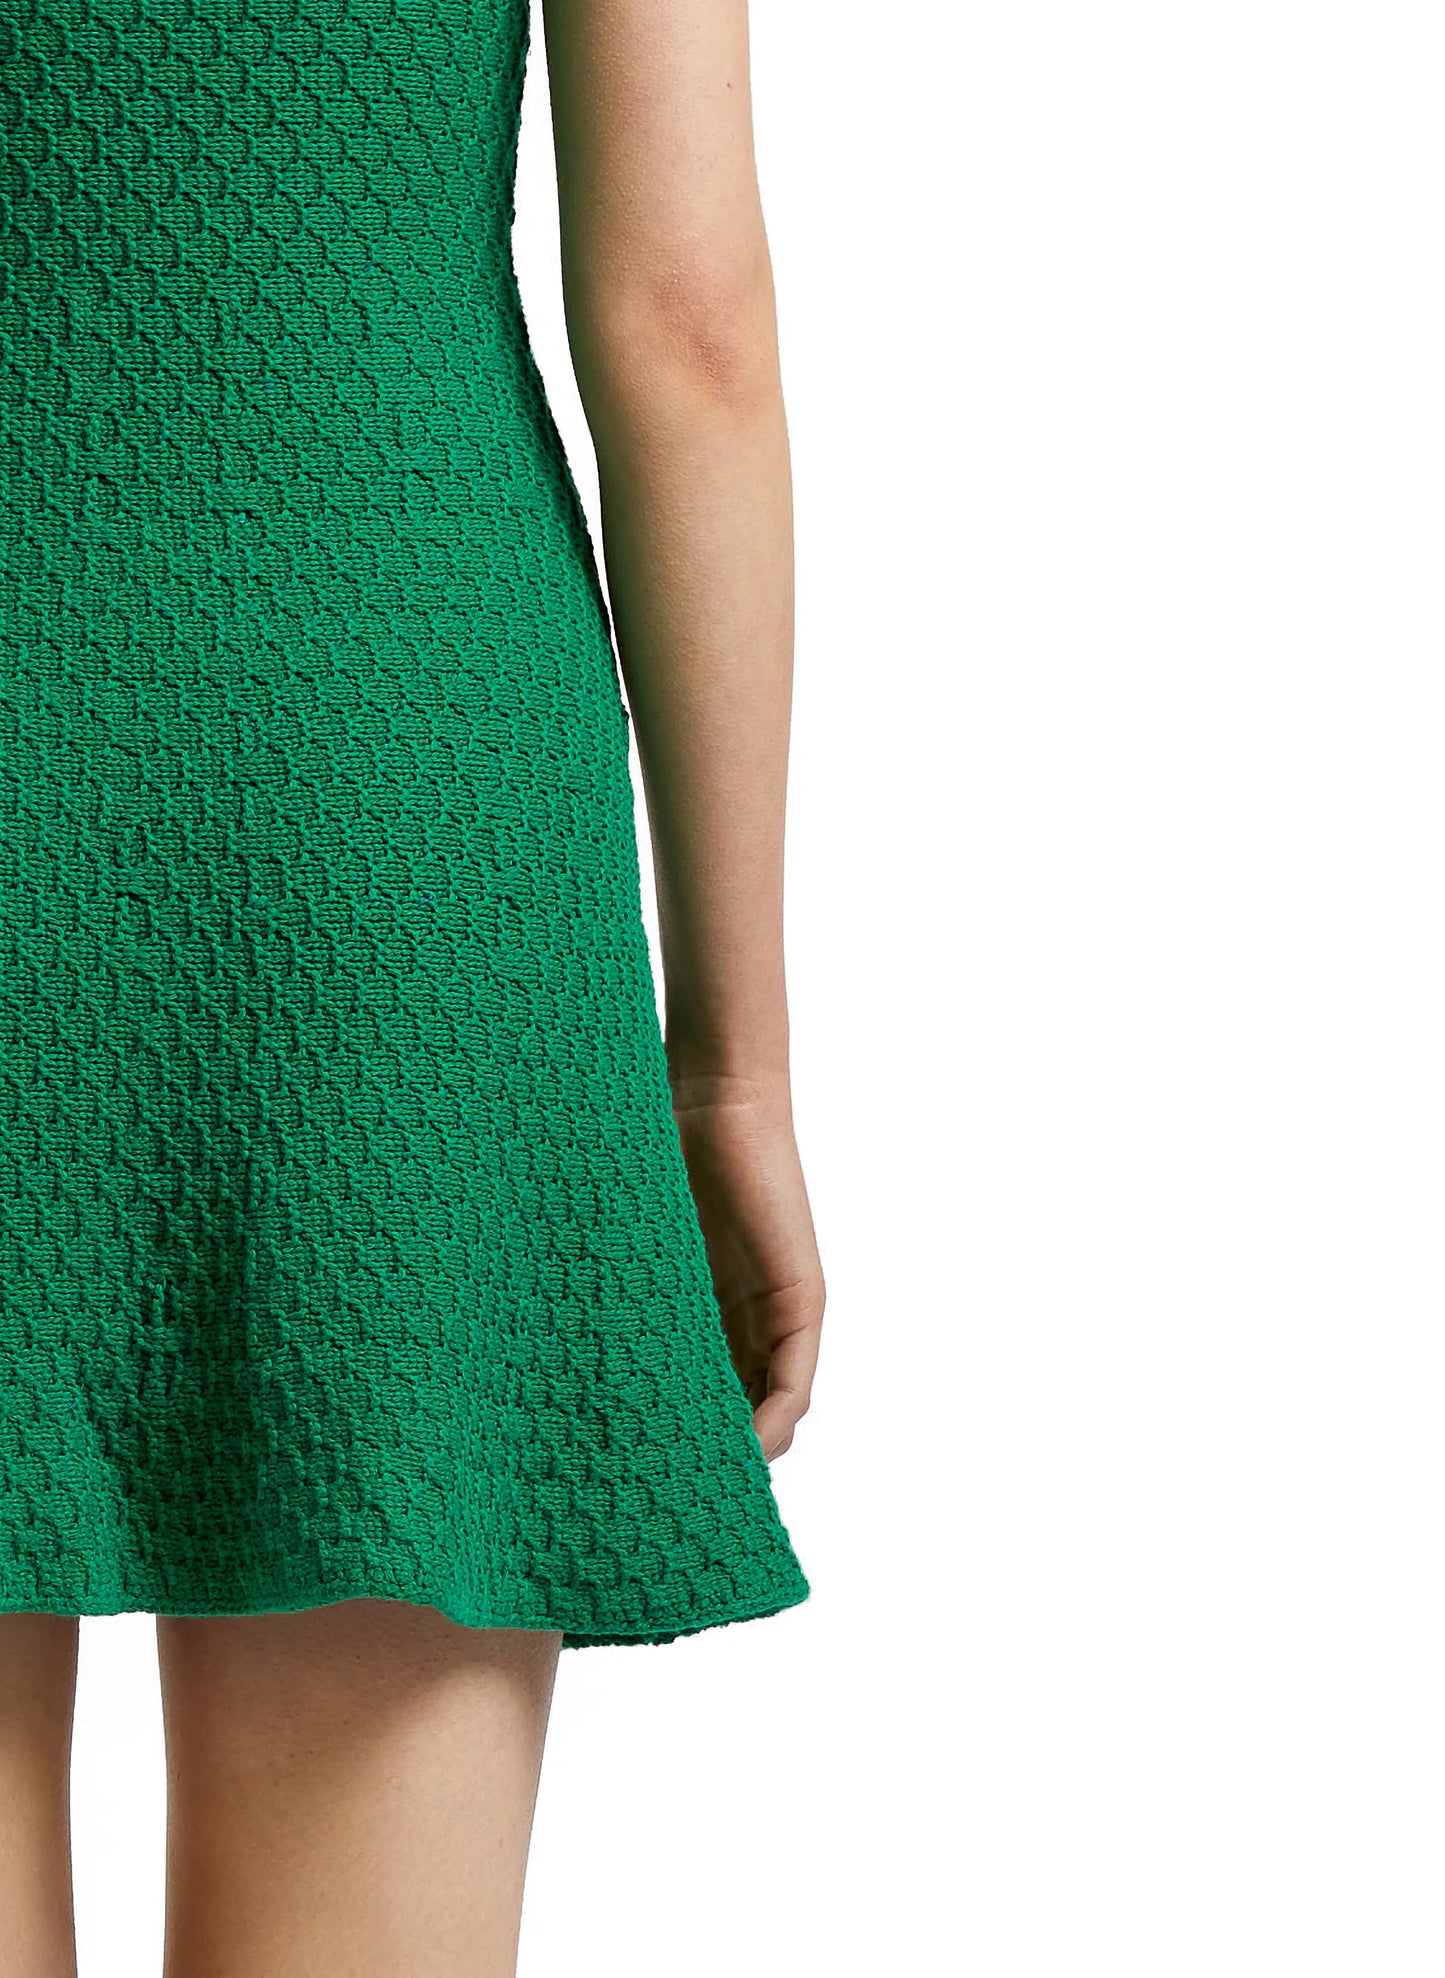 Crochet Dress Green